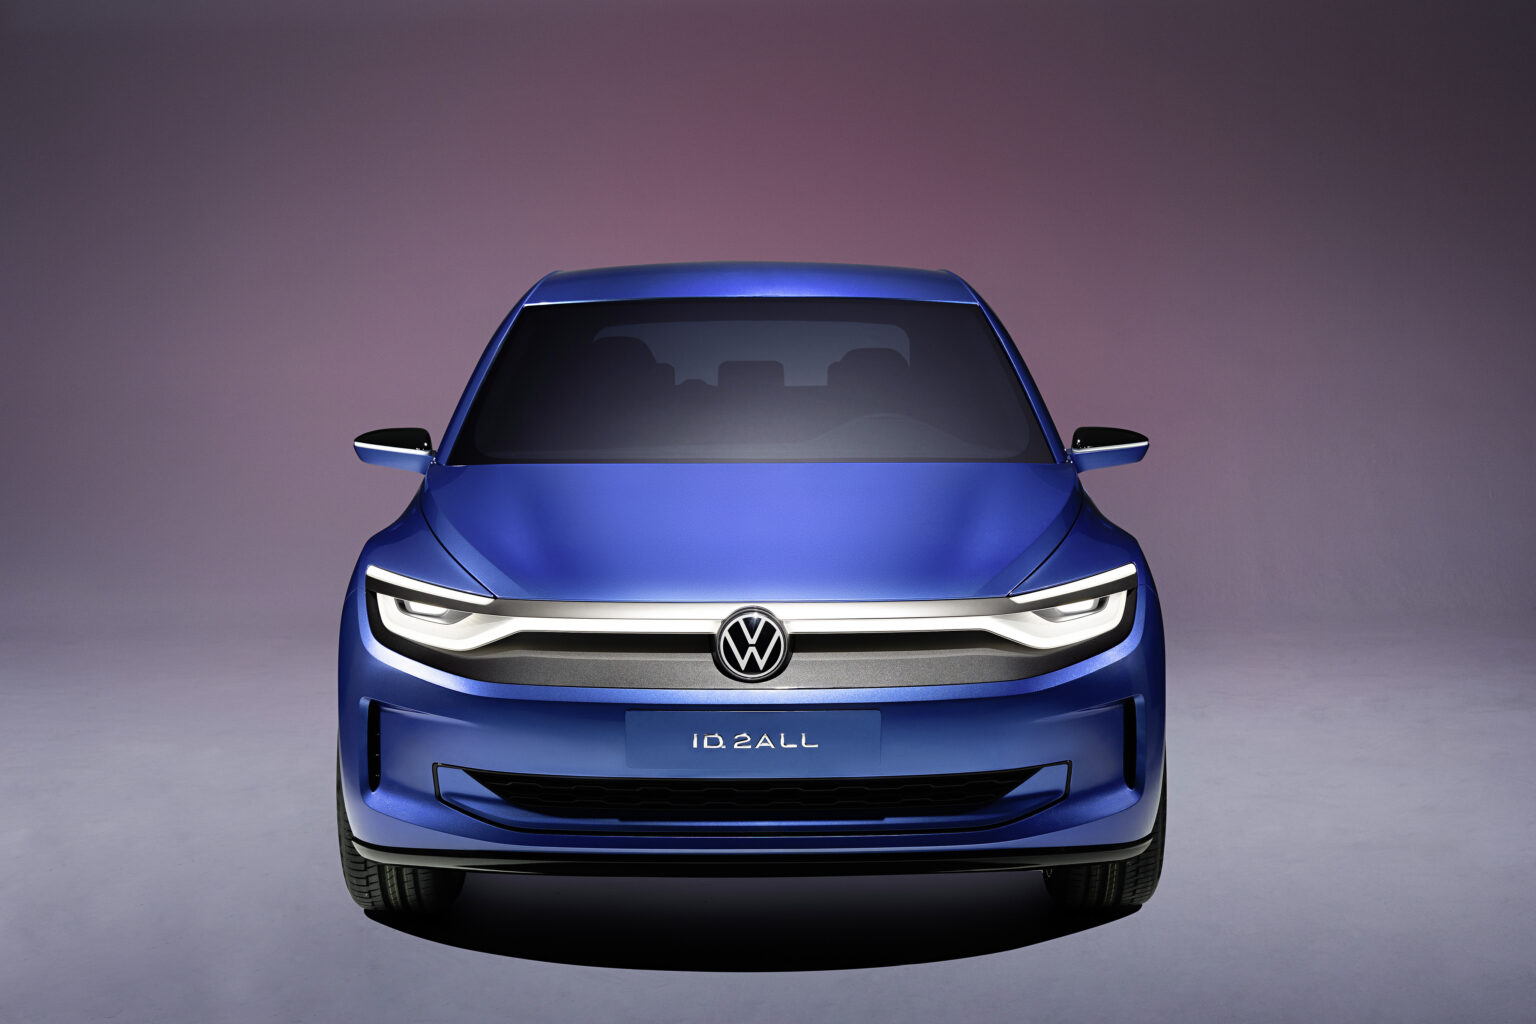 2025 Volkswagen ID. 2all Exterior Image 2